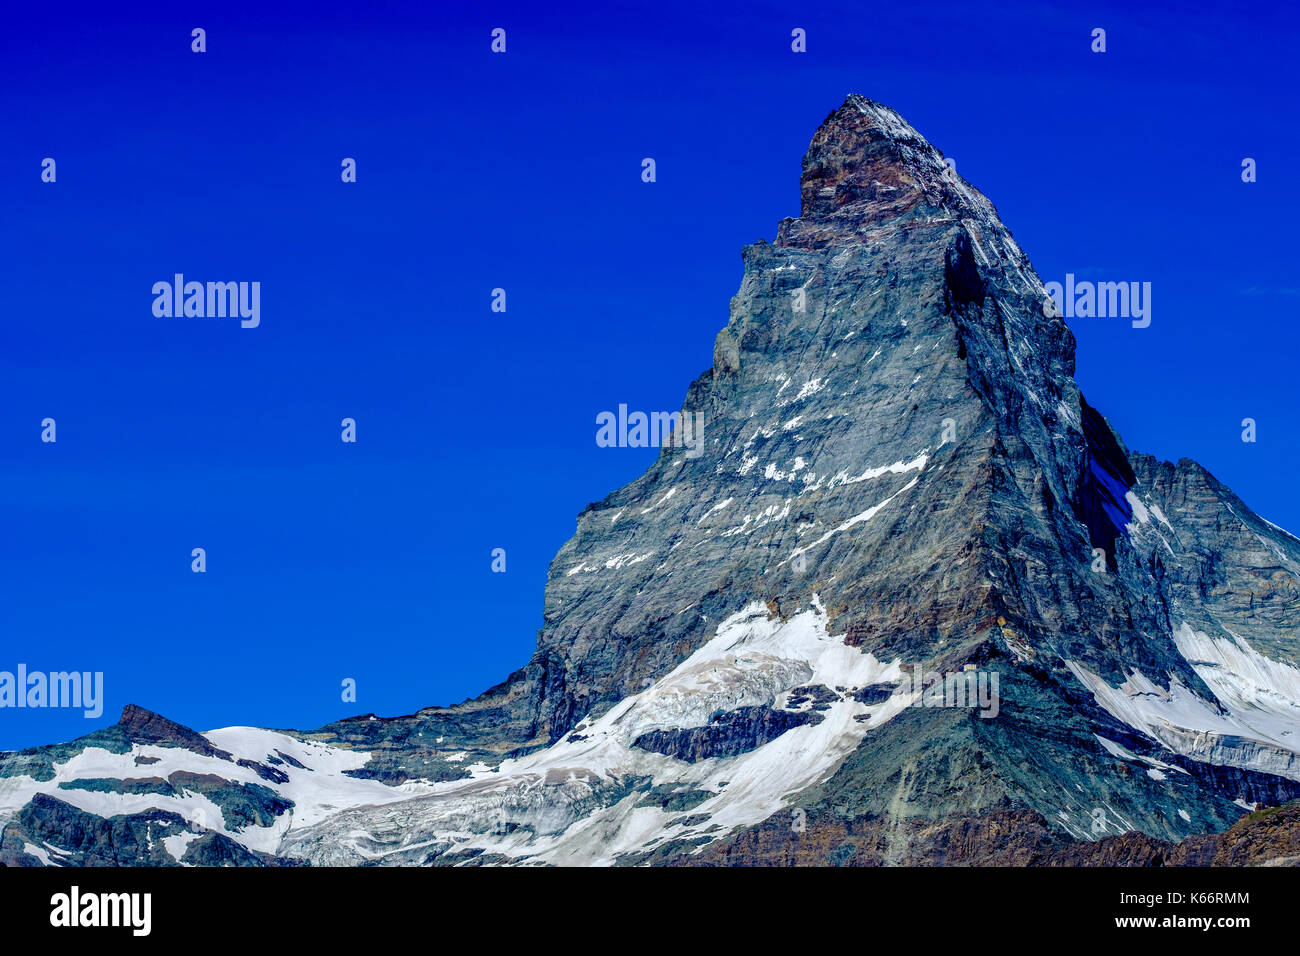 L'Est et la face nord du mont Cervin, Monte Cervino, avec ciel bleu clair Banque D'Images